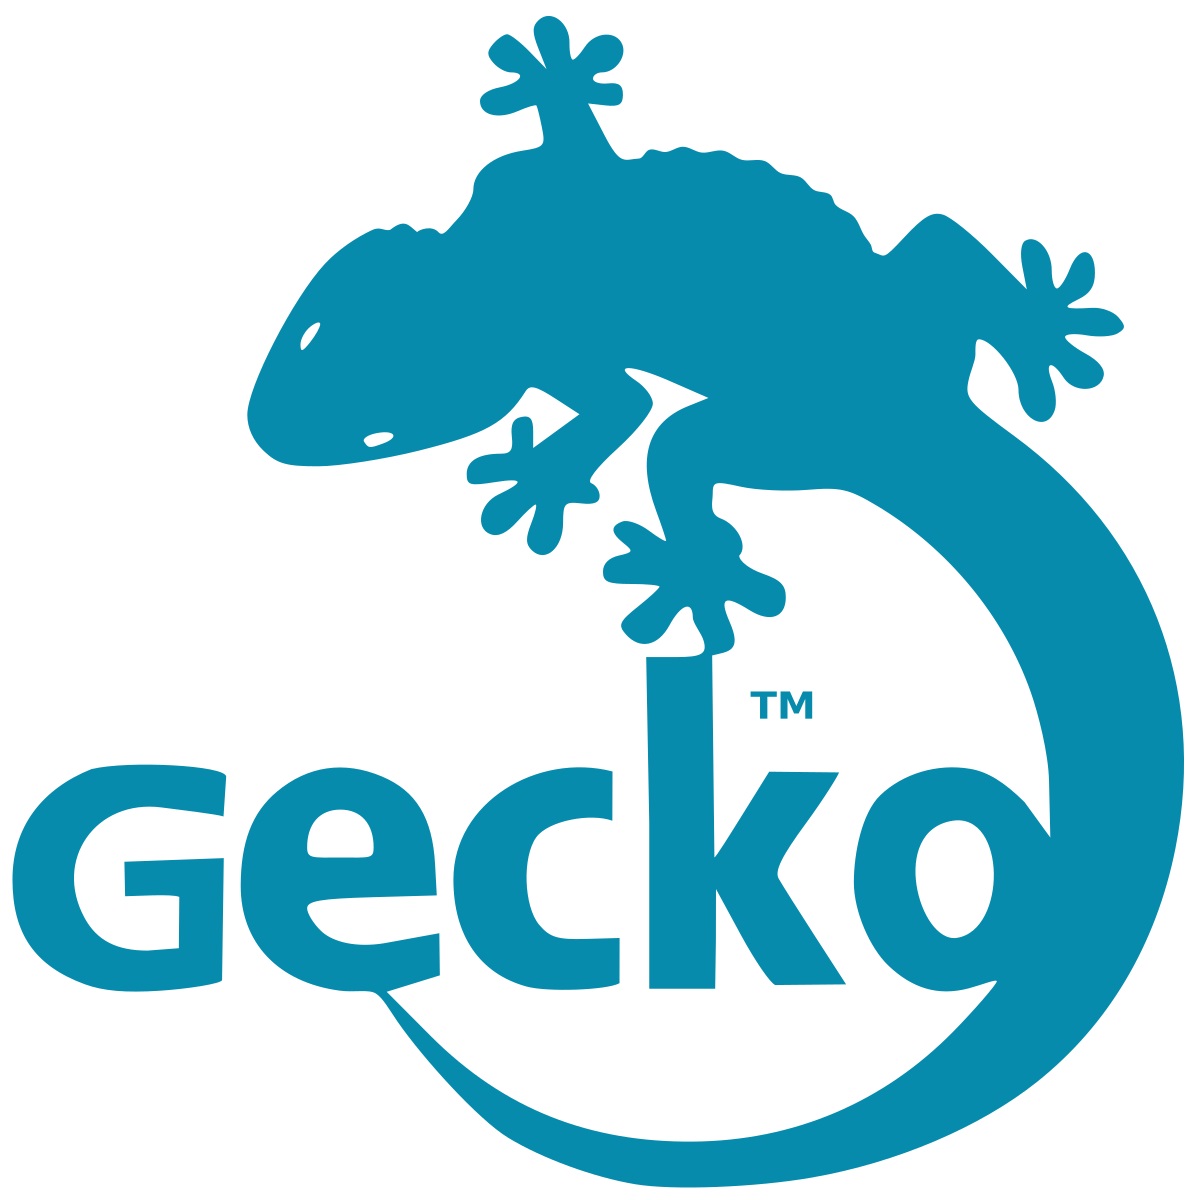 Mozillagecko-logo.gif